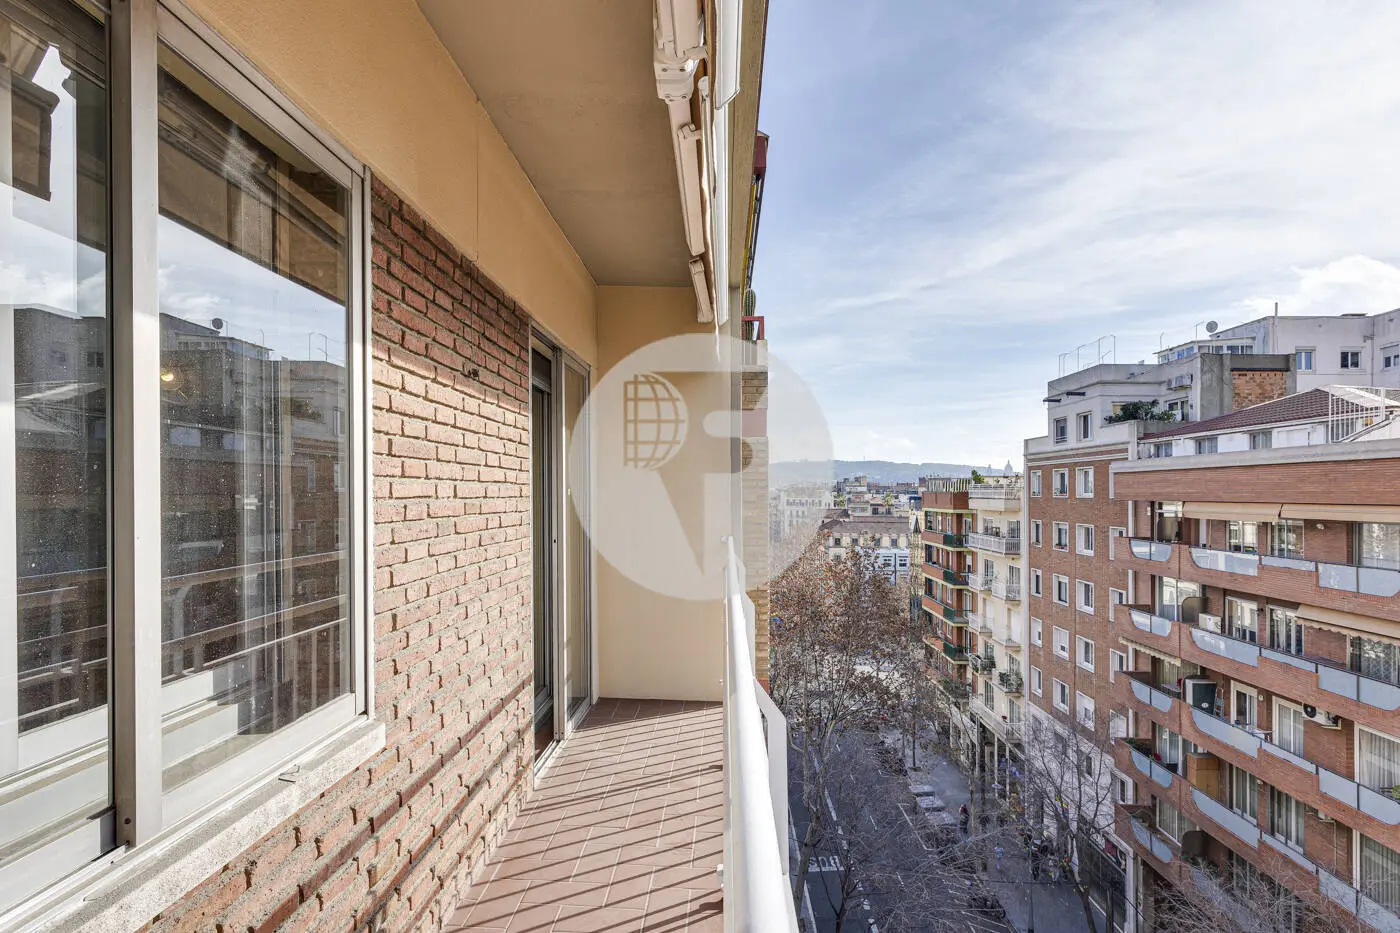 Pis de 3 habitacions ubicat al barri de la Nova Esquerra de l'Eixample de Barcelona. 34